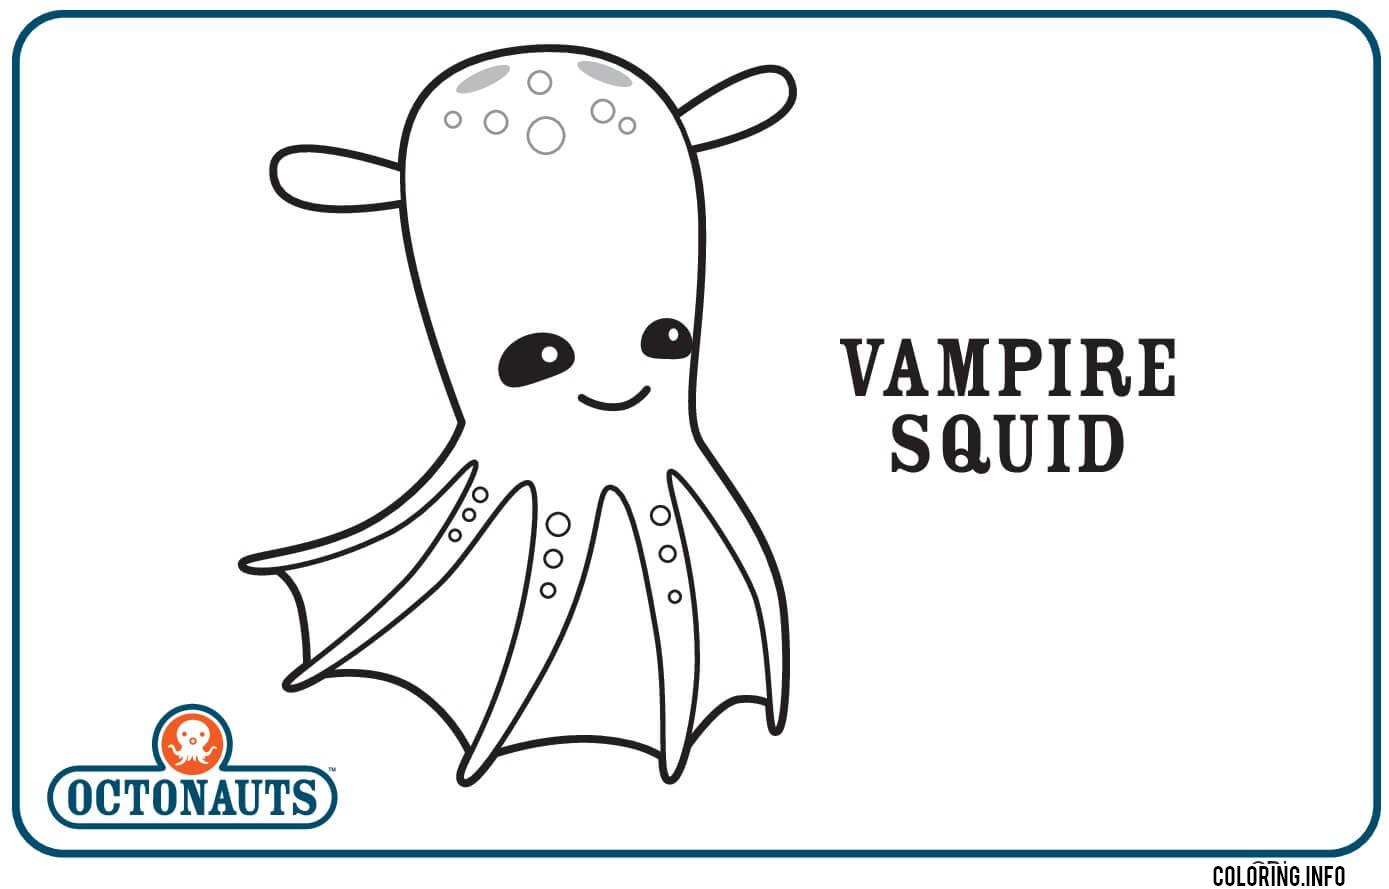 Vampire Squid Octonaut Creature coloring